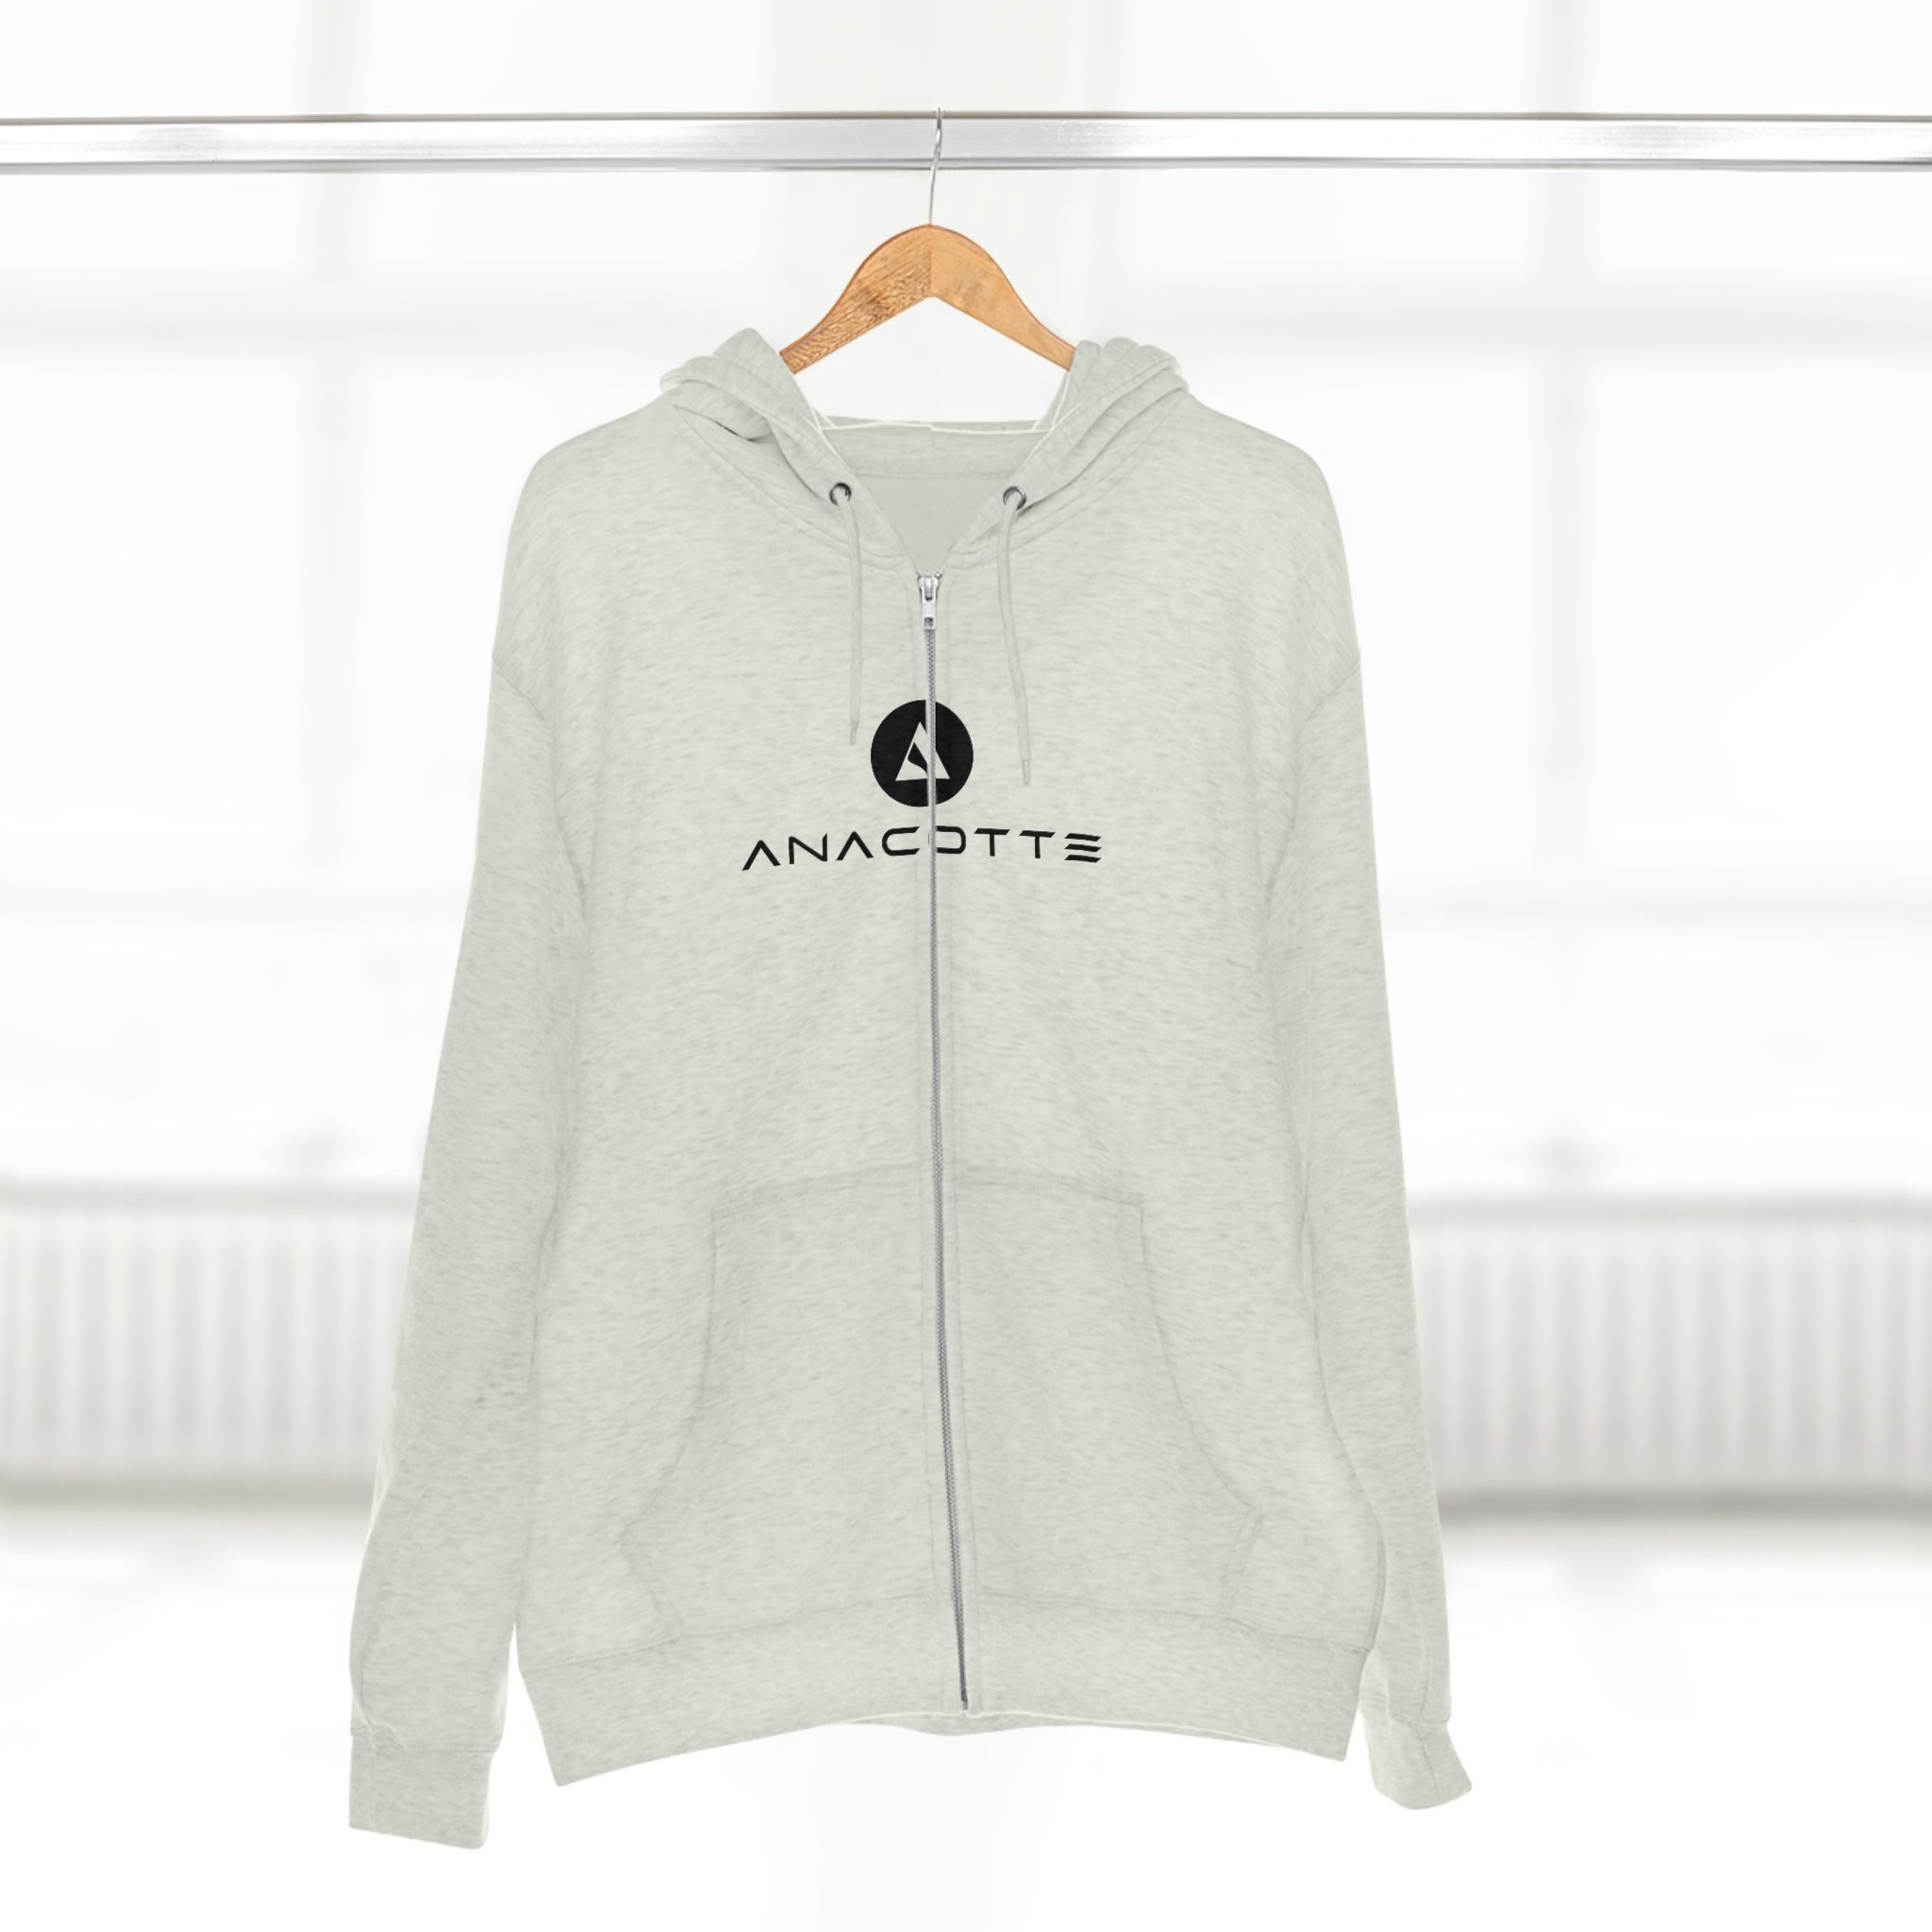 Anacotte Unisex Versatile Zip-Up Hoodie on wardrope